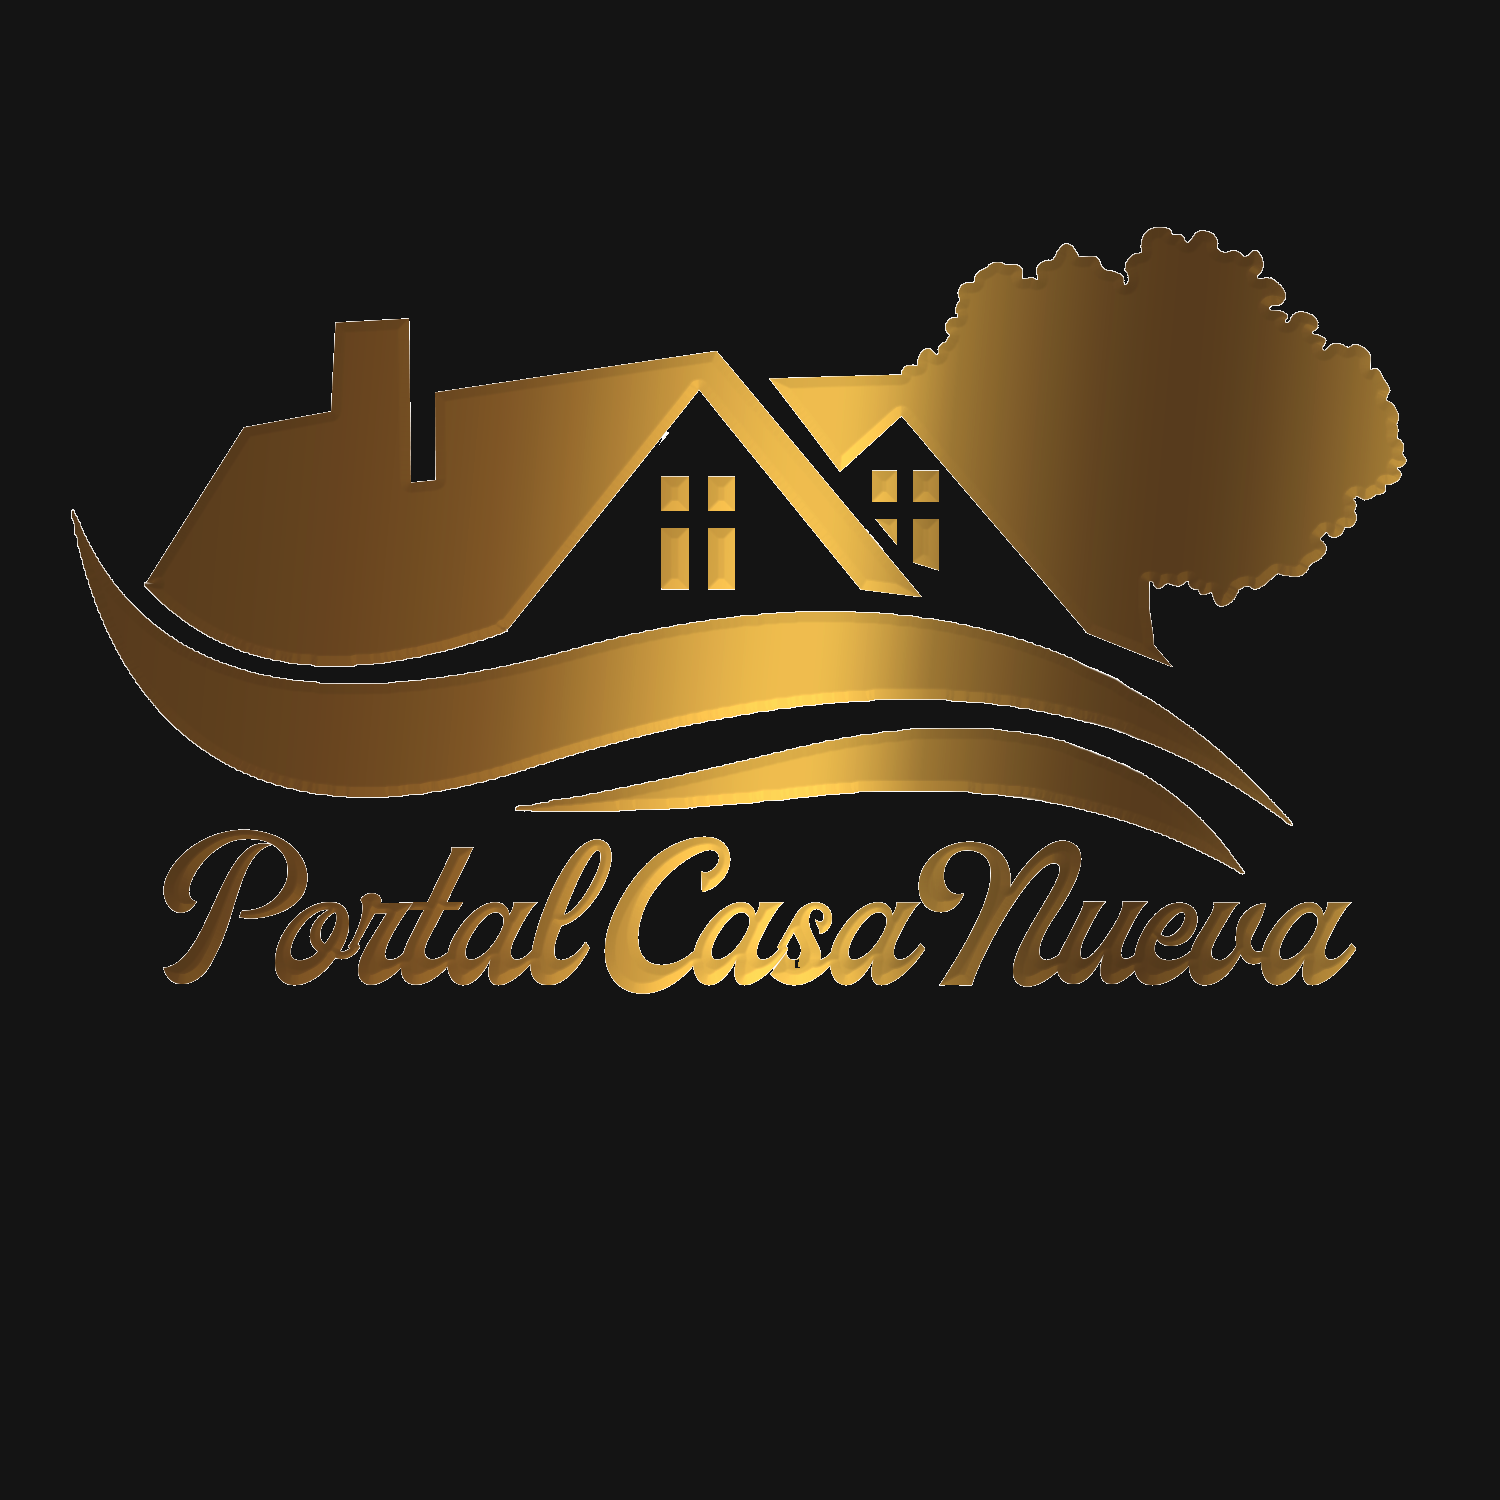 Portal Casa Nueva logo